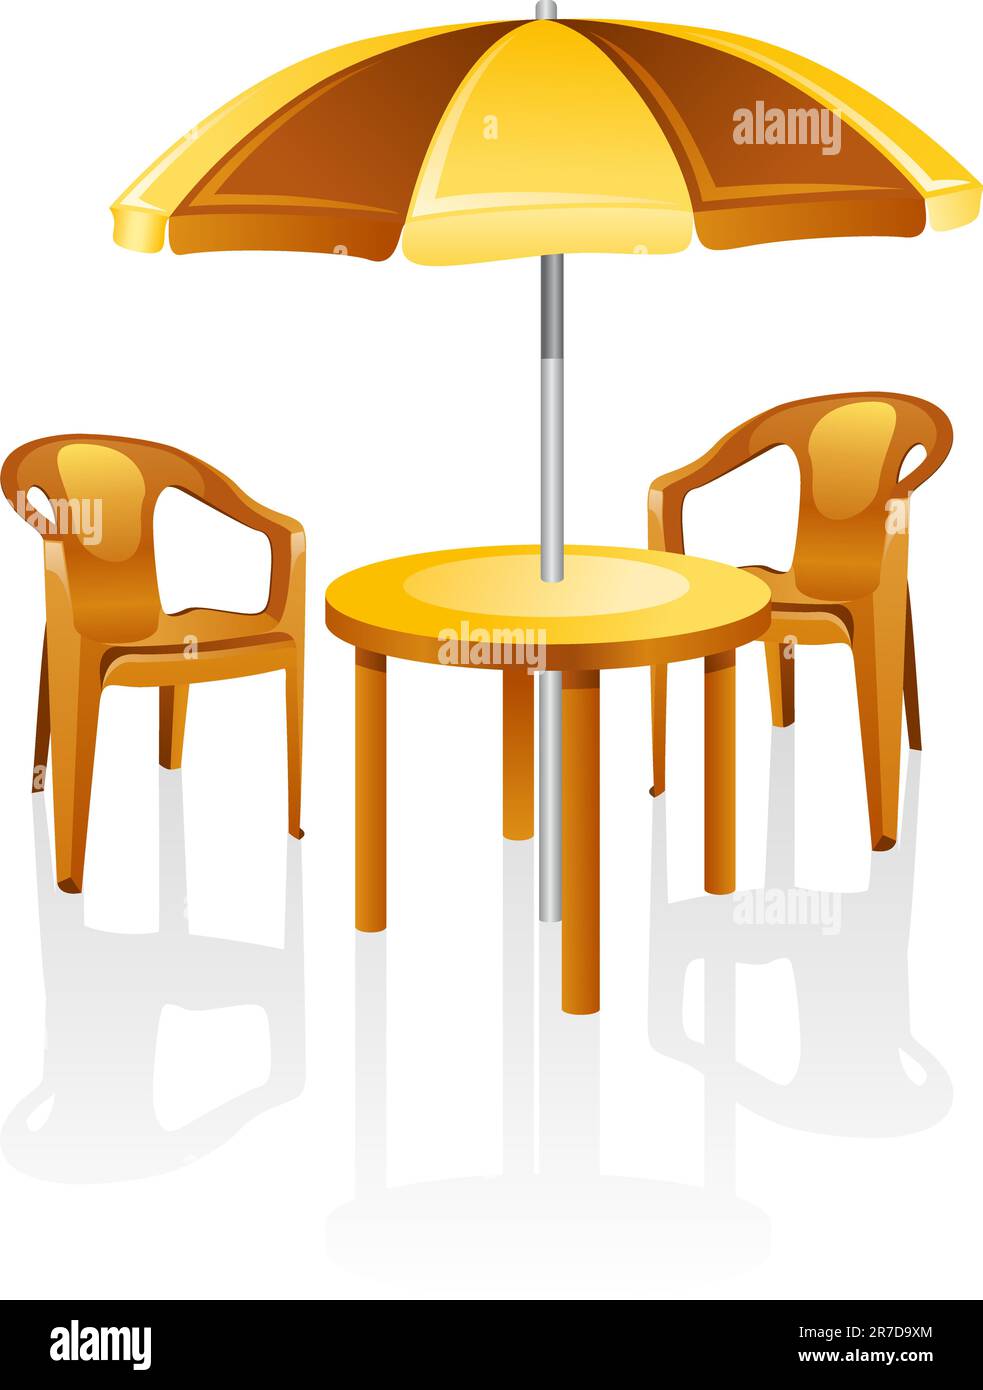 Café, meubles de jardin: Table, chaise, parasol. Isolé sur un fond blanc. Illustration de Vecteur